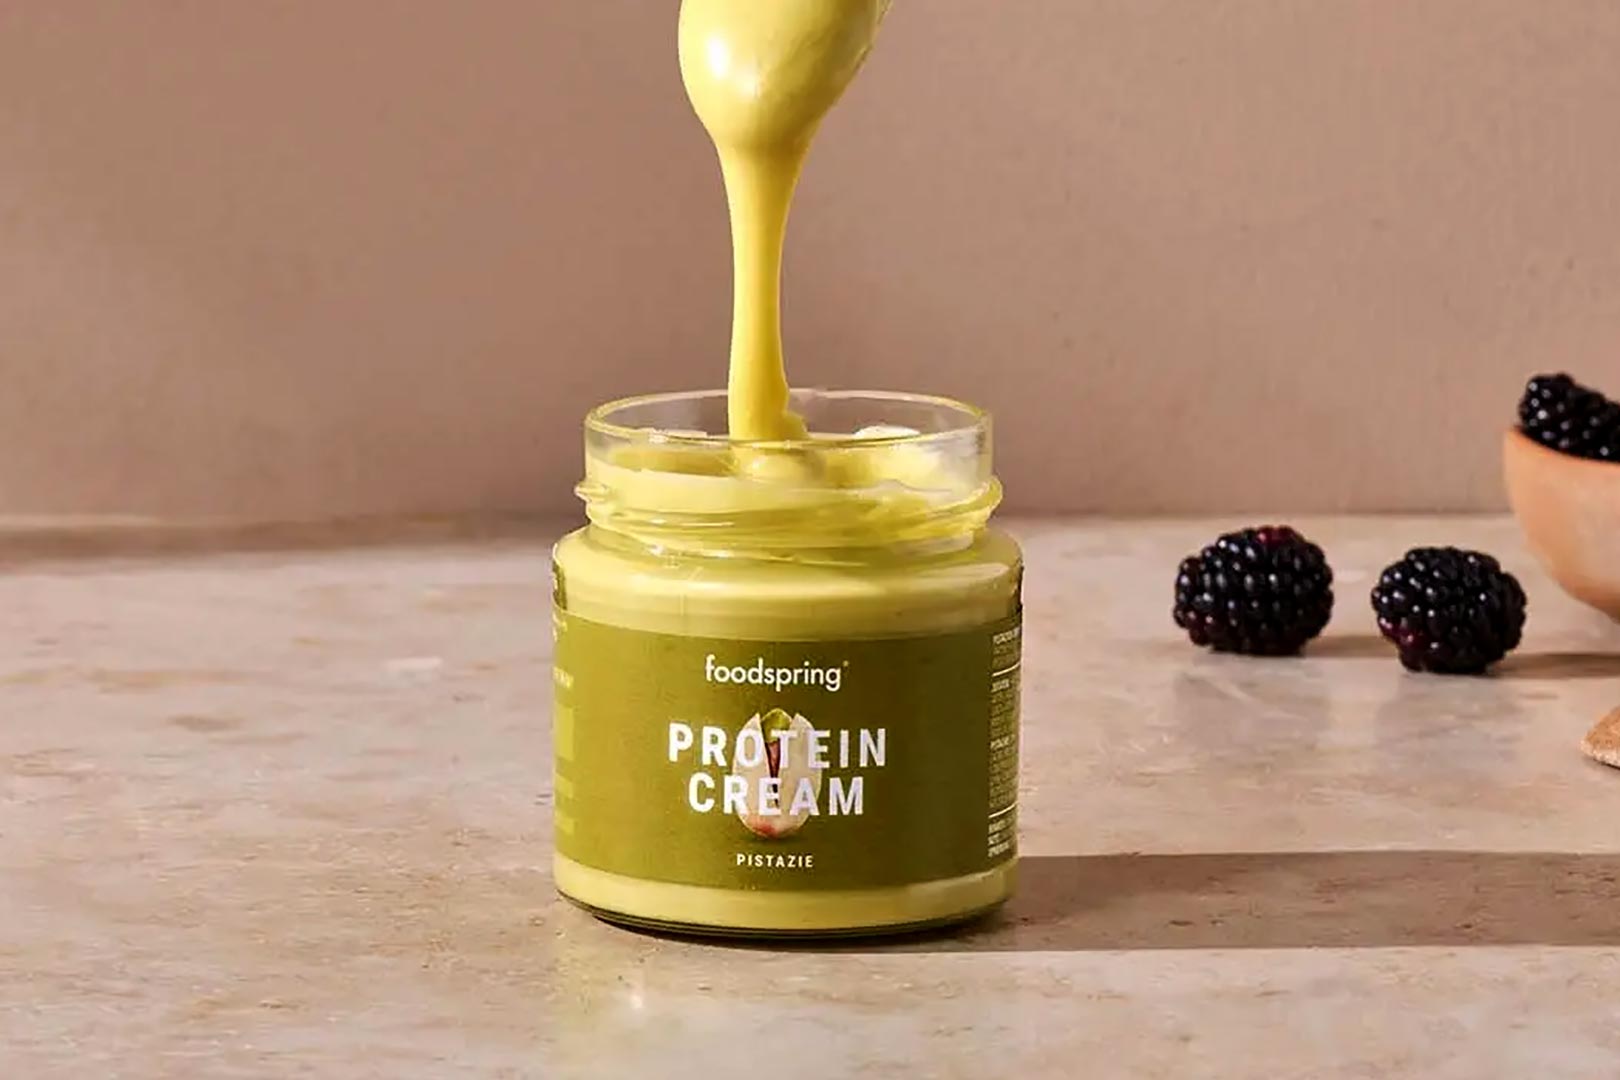 Foodspring Pistachio Protein Cream